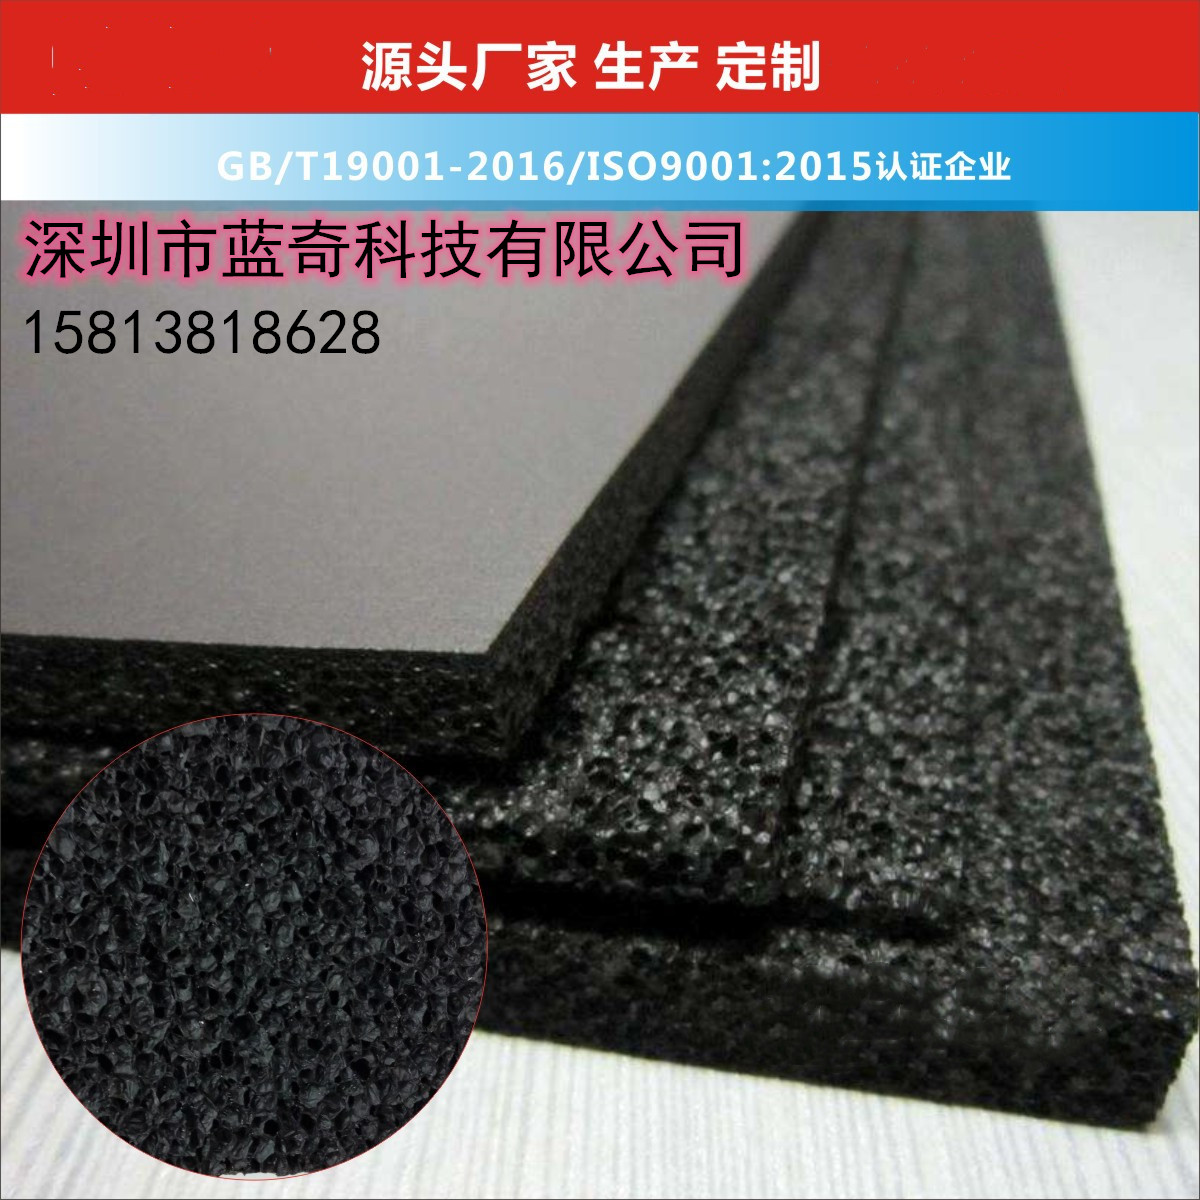 软性橡胶泡棉磁力片-深圳市蓝奇科技有限公司